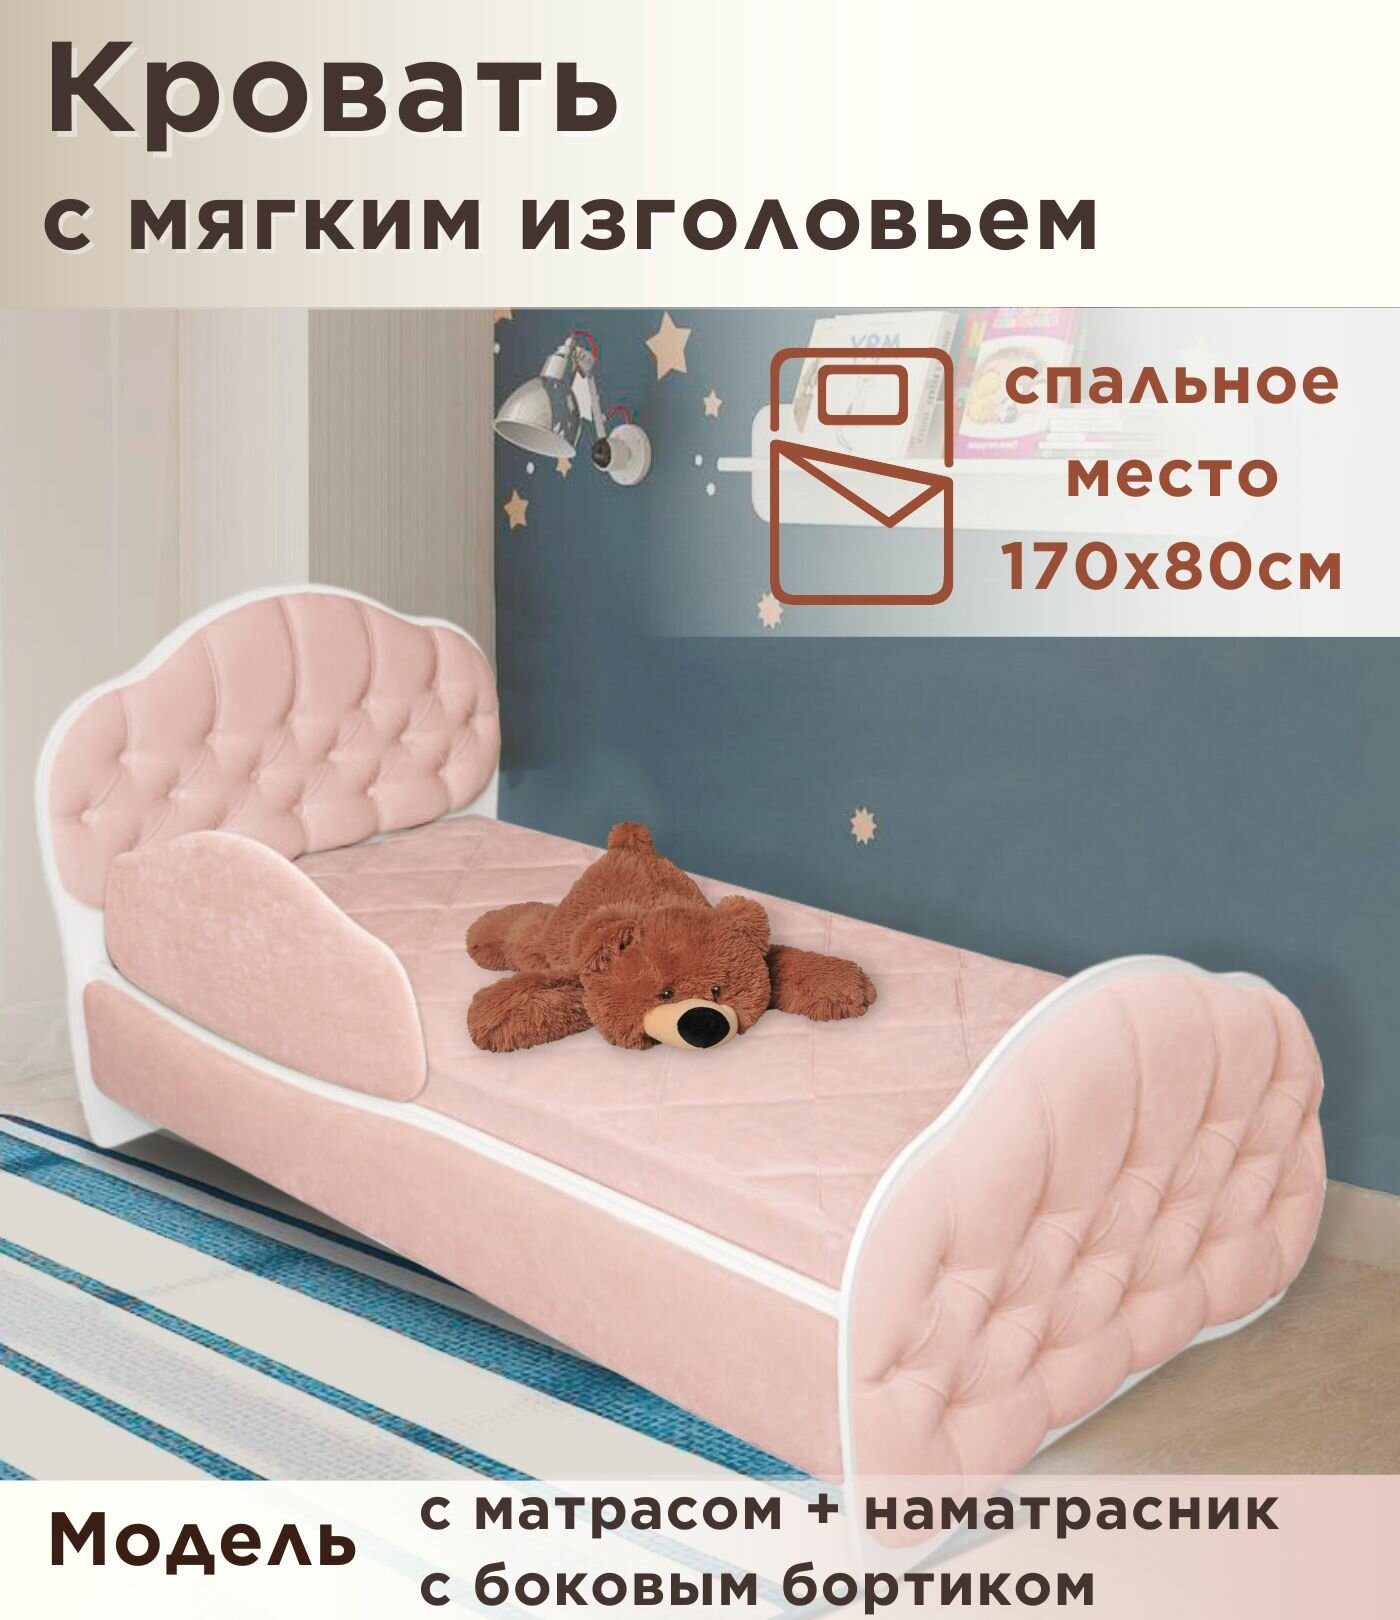 Кровать детская Гармония 170х80 см, Teddy 027, кровать + матрас + бортик + наматрасник